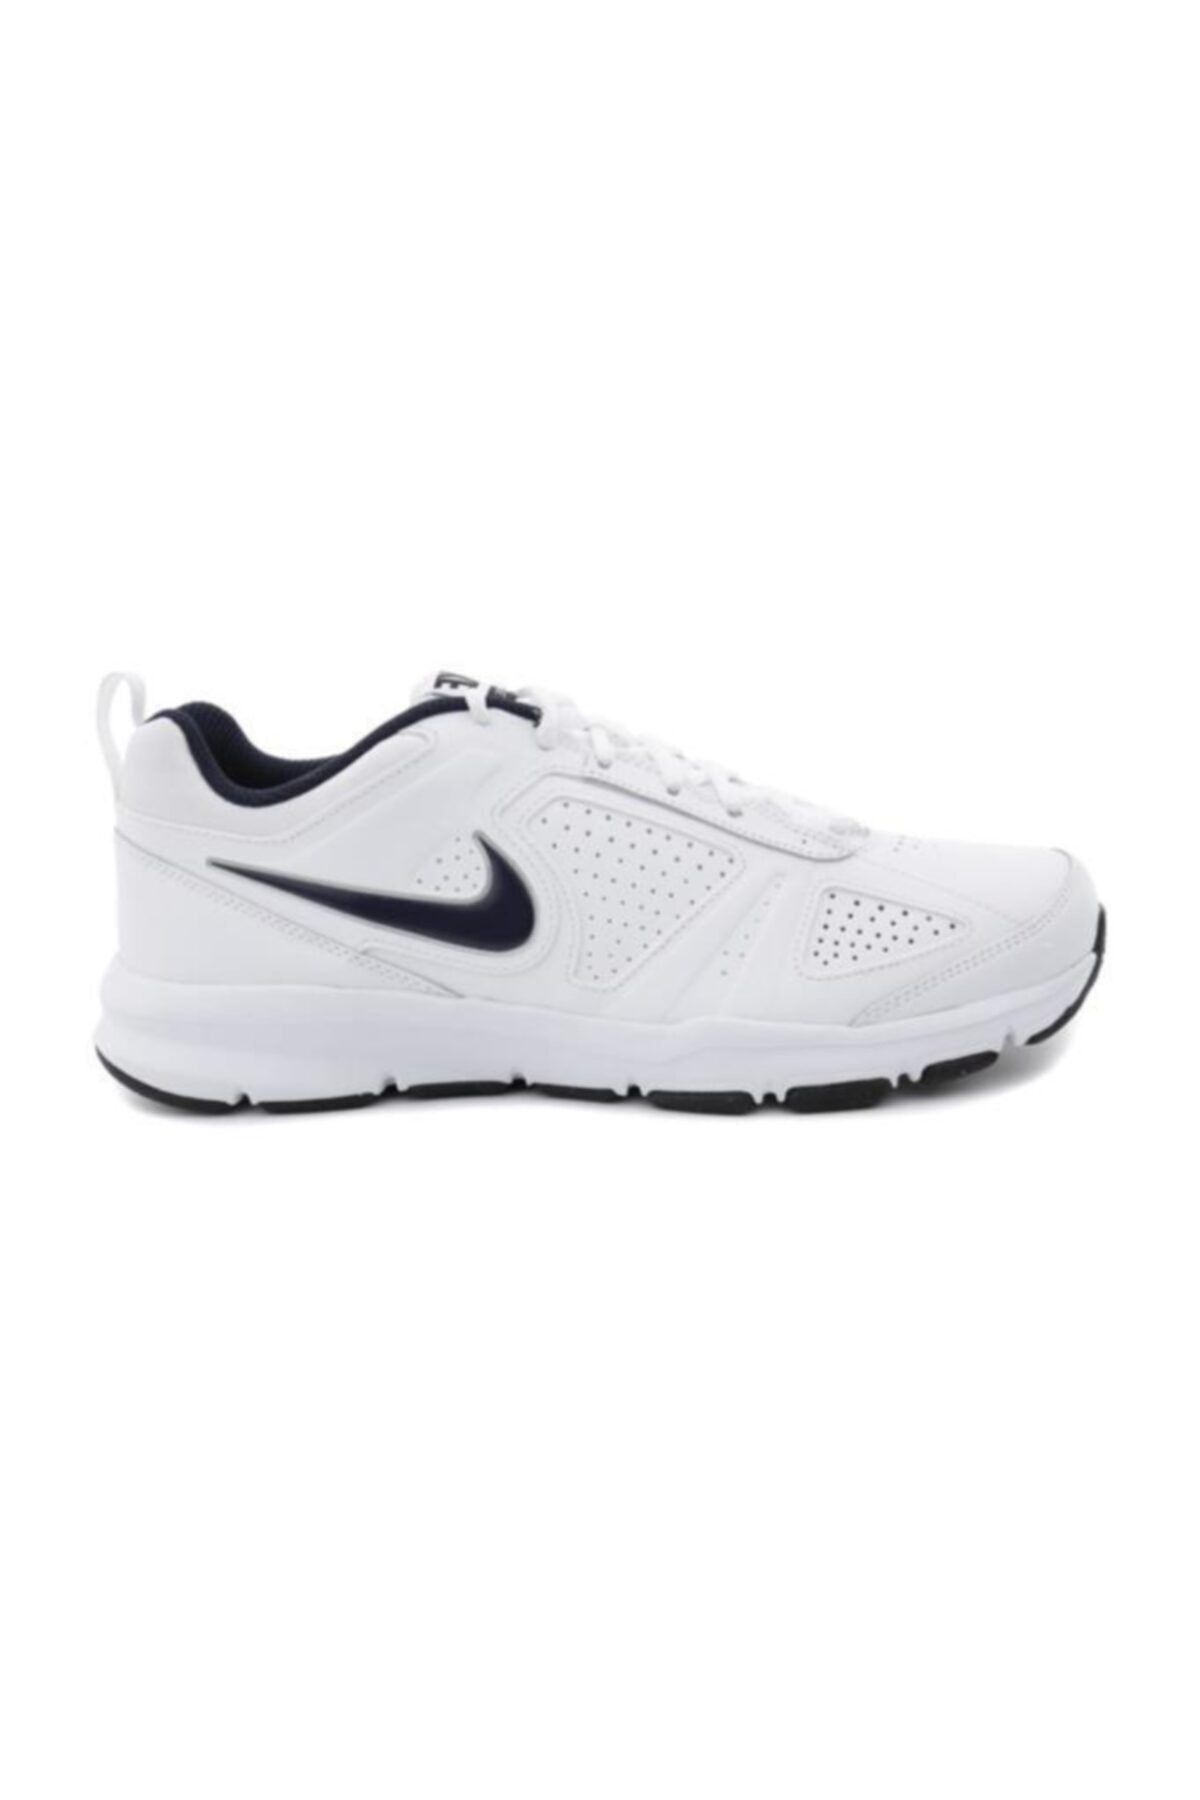 Nike 616544-101 T-lıte Erkek Yürüyüş Ve Koşu Spor Ayakkabı